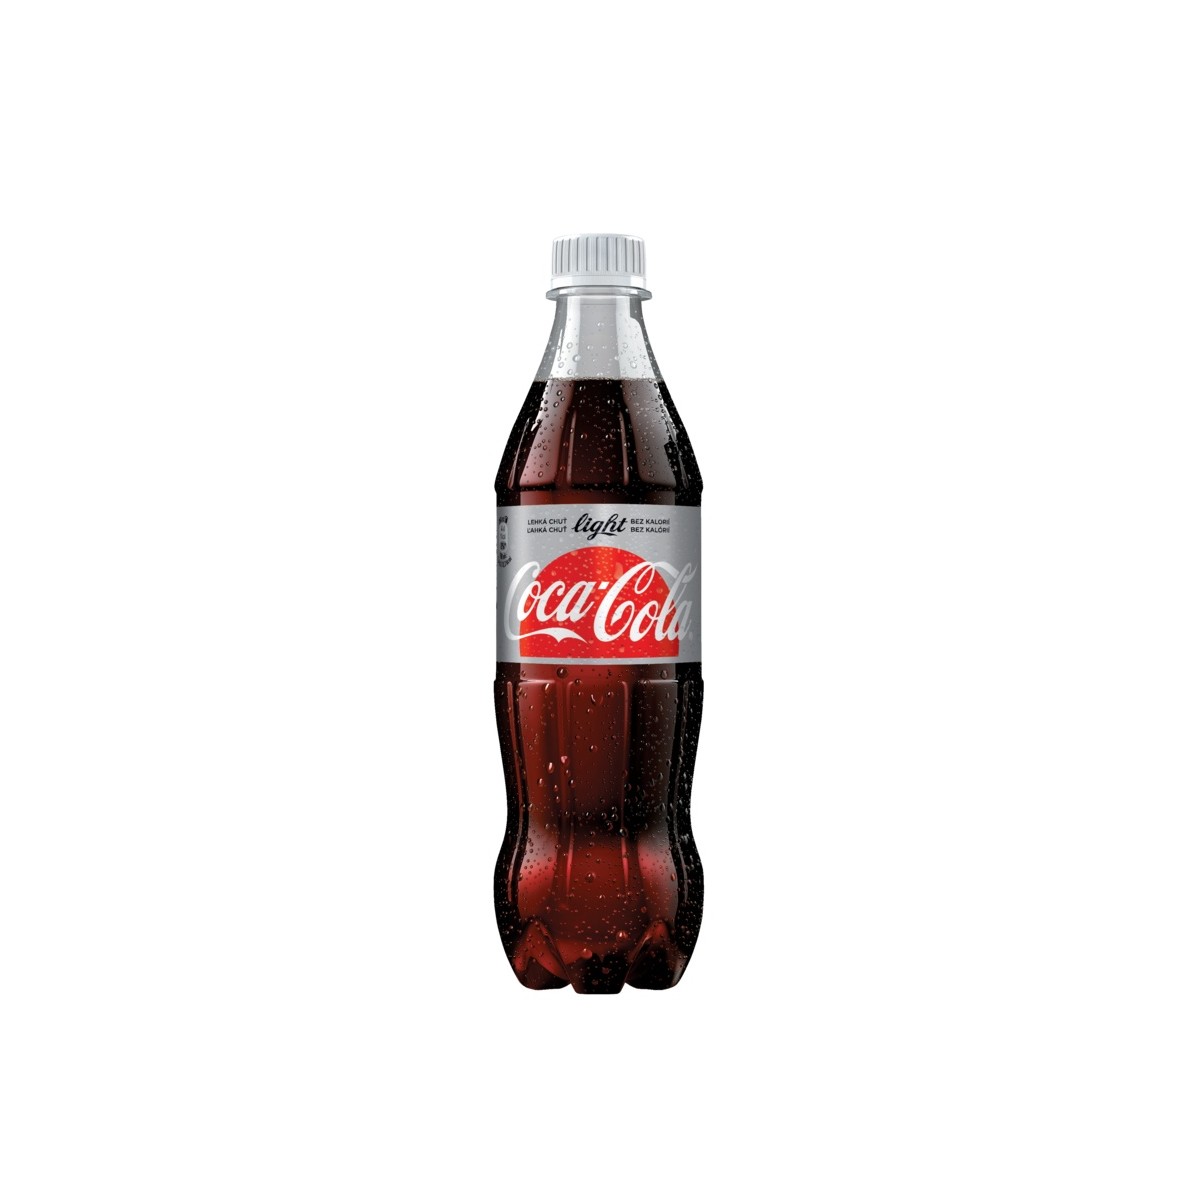 Coca cola light 0,5l - PET